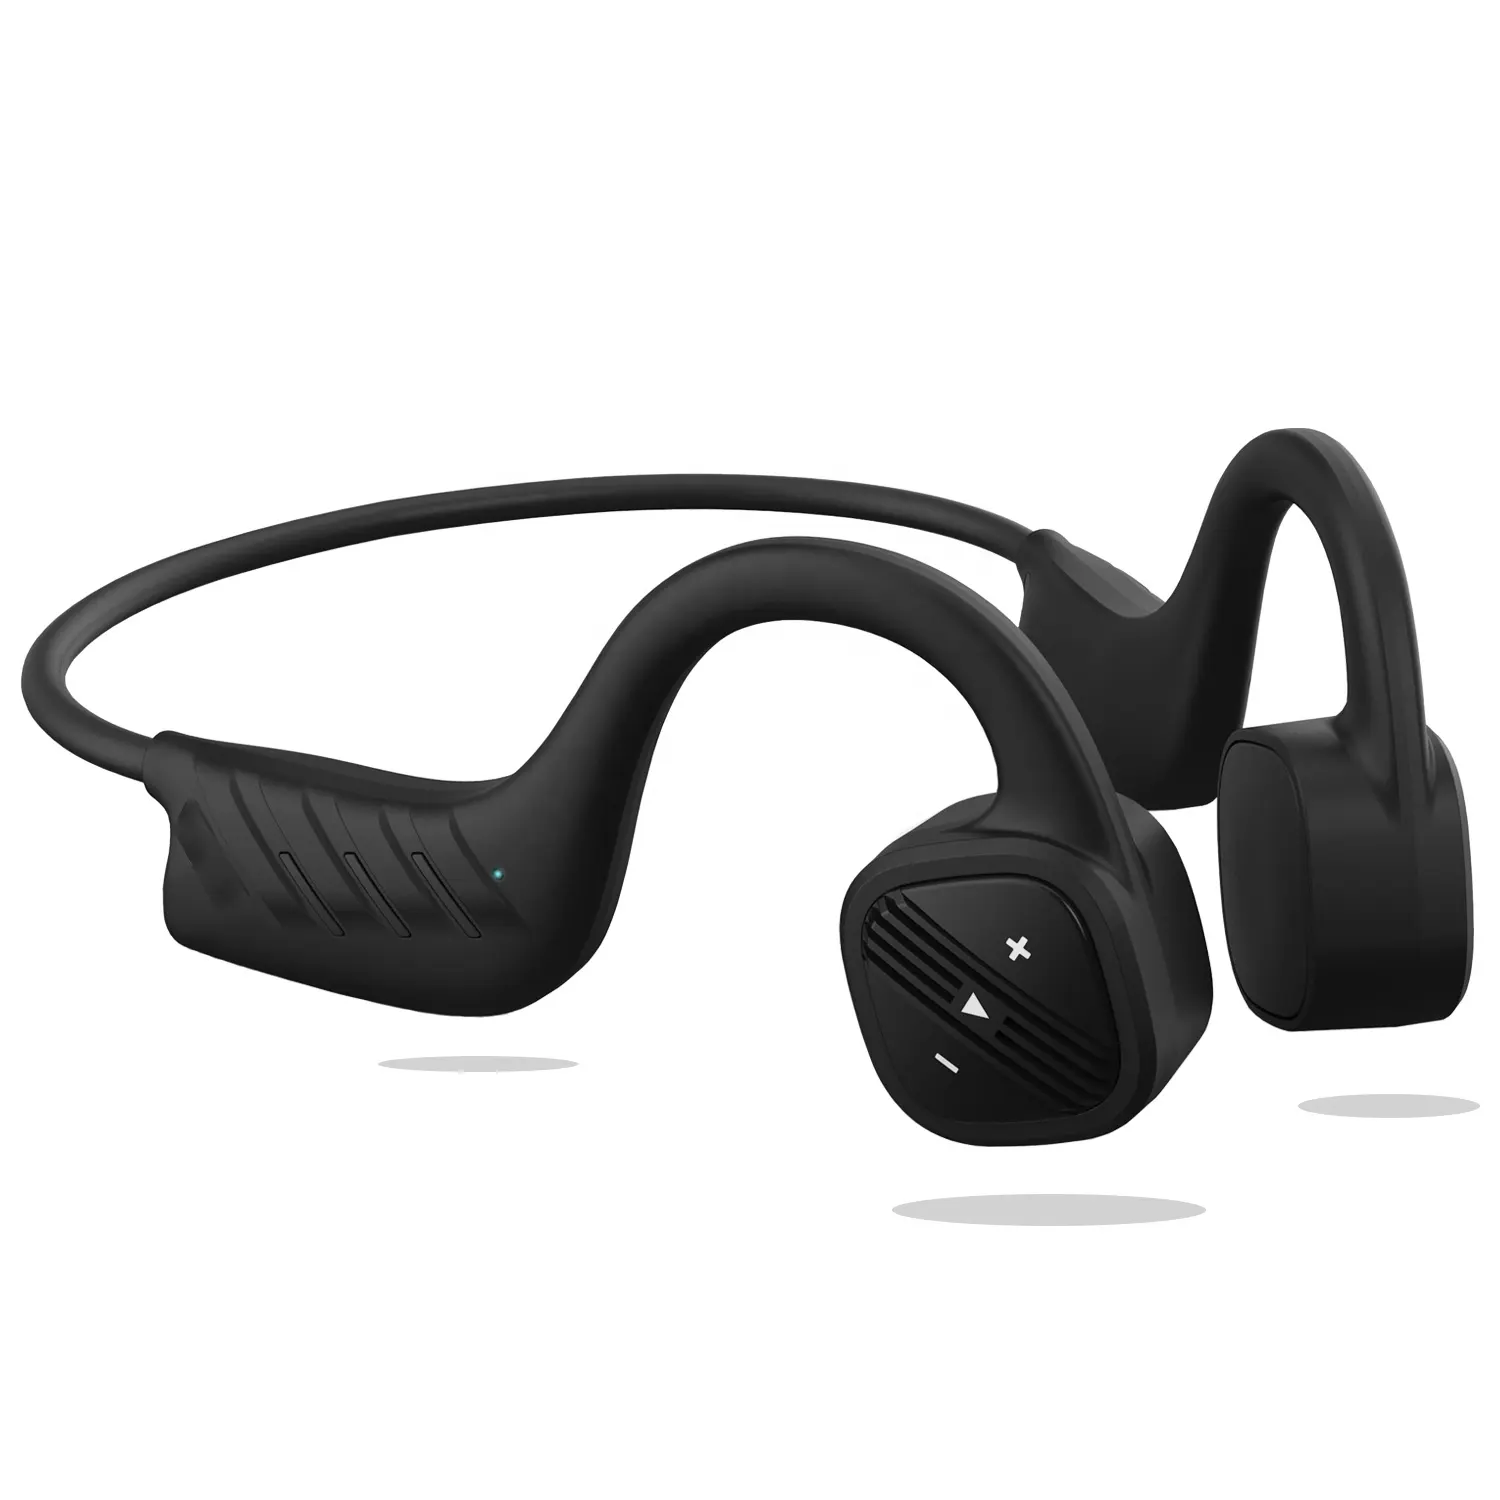 Stereo Wireless BT5.0 auricolare Earhook cuffie a conduzione ossea Bluetooth Wireless senza tappi per le orecchie cuffie con microfono incorporato